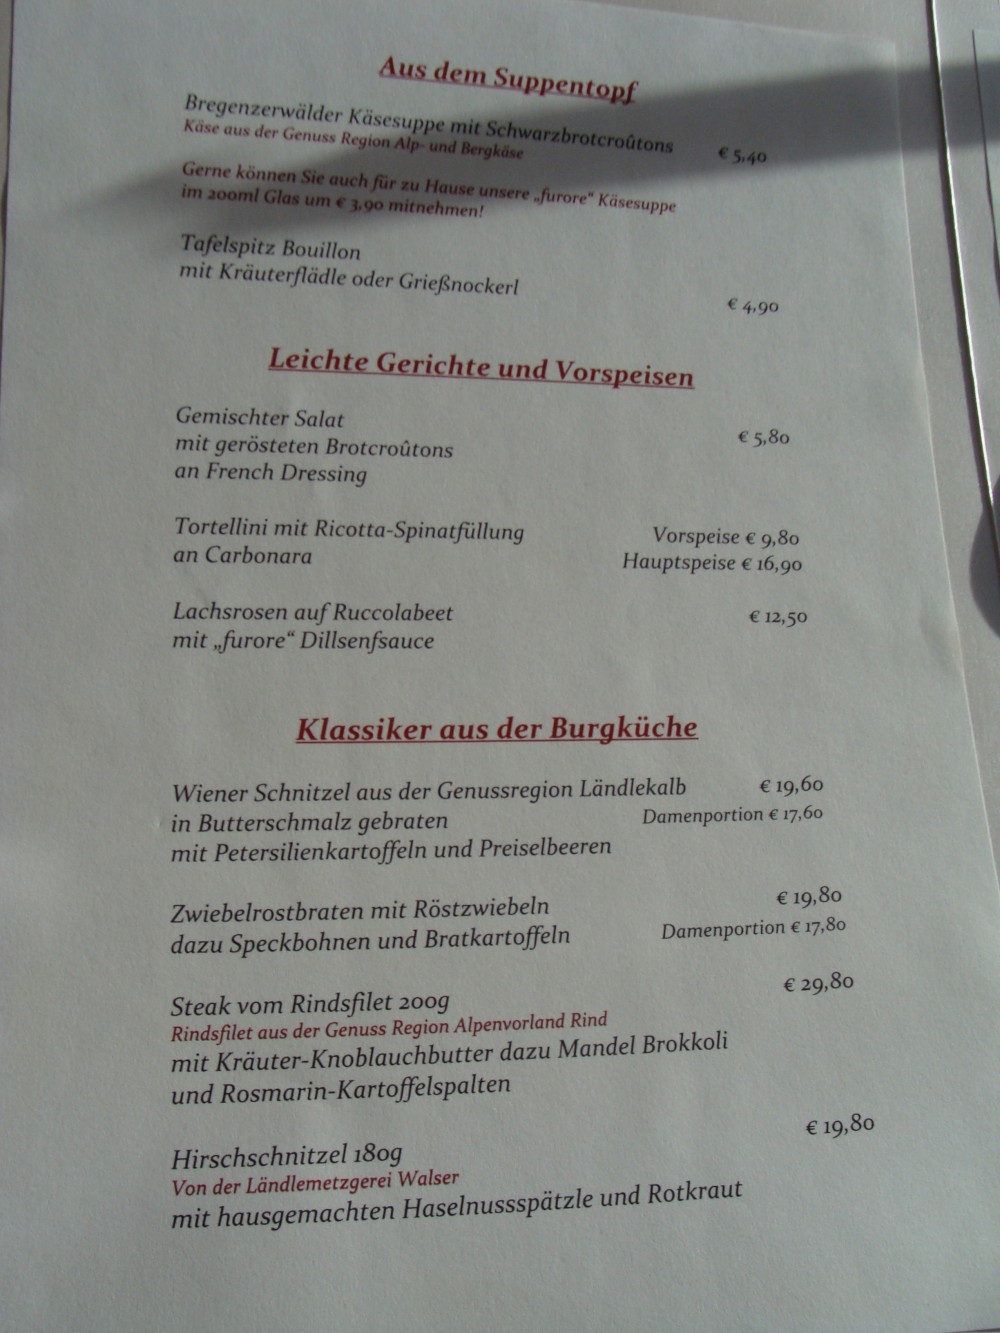 Unter "Klassiker aus der Burgküche" findet sich mein Favorit, das Steak! - Burgrestaurant Gebhardsberg - Bregenz